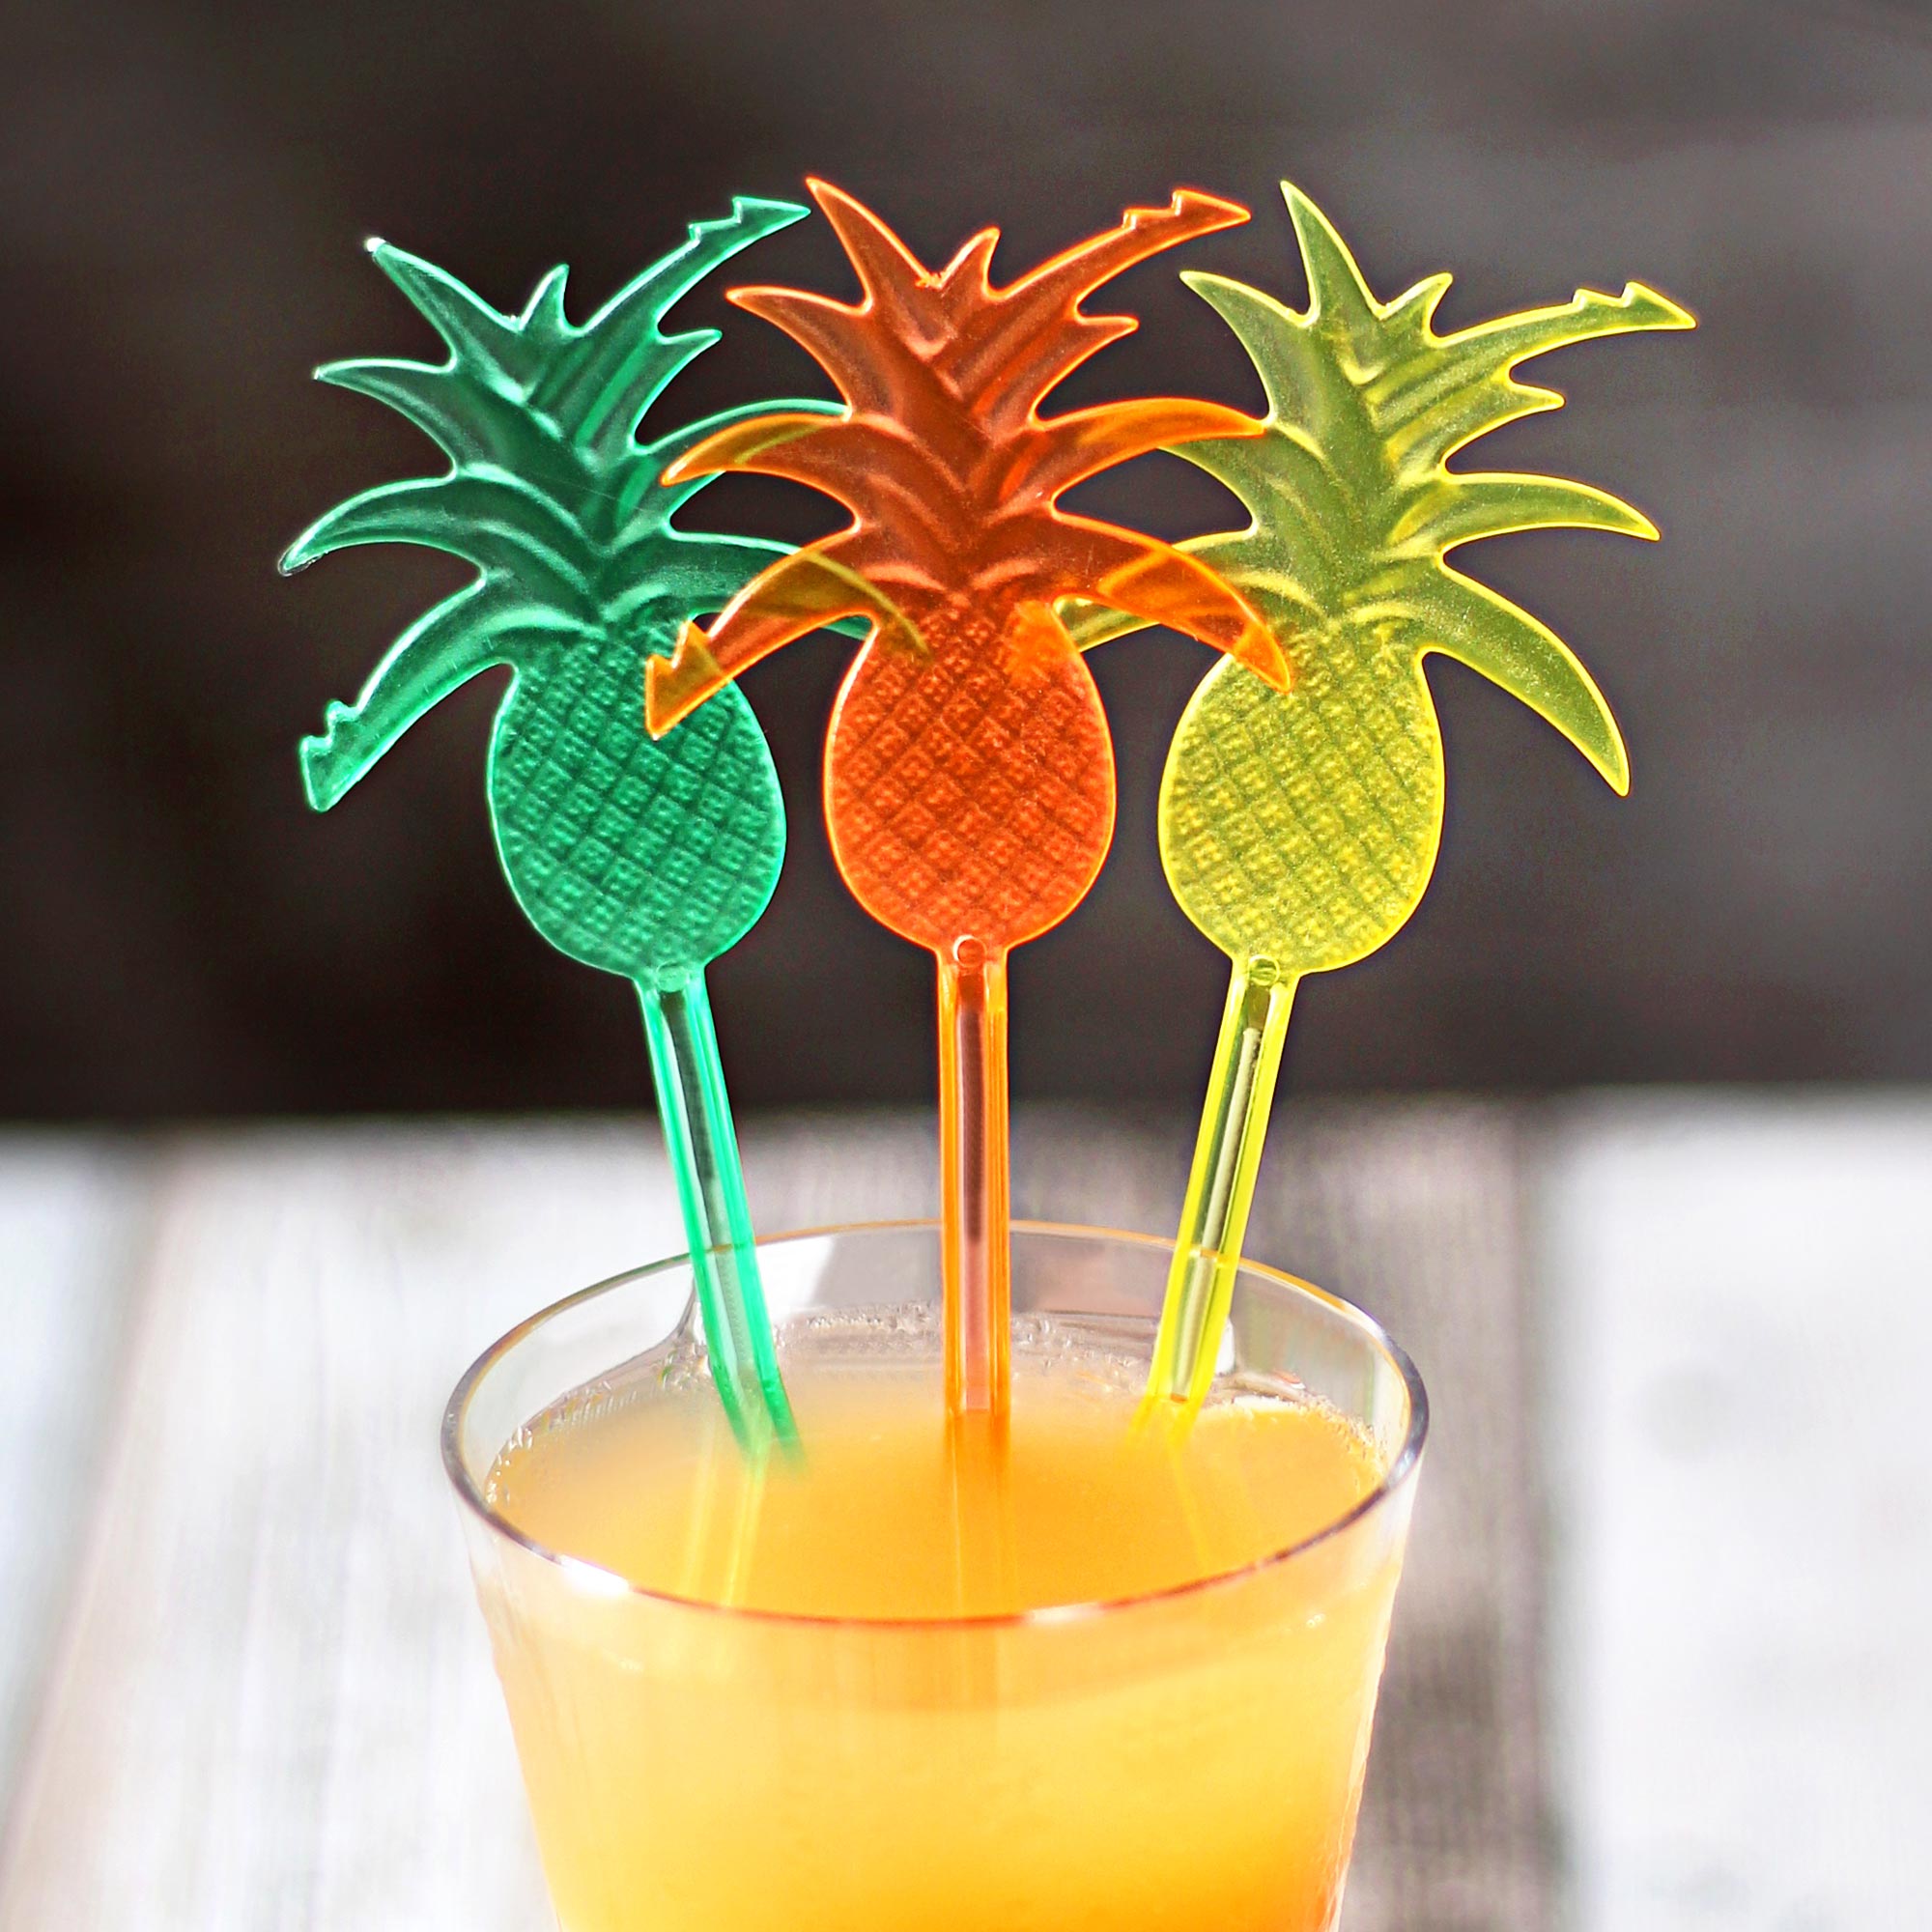 Pineapple Drink Stirrer - Set of 4